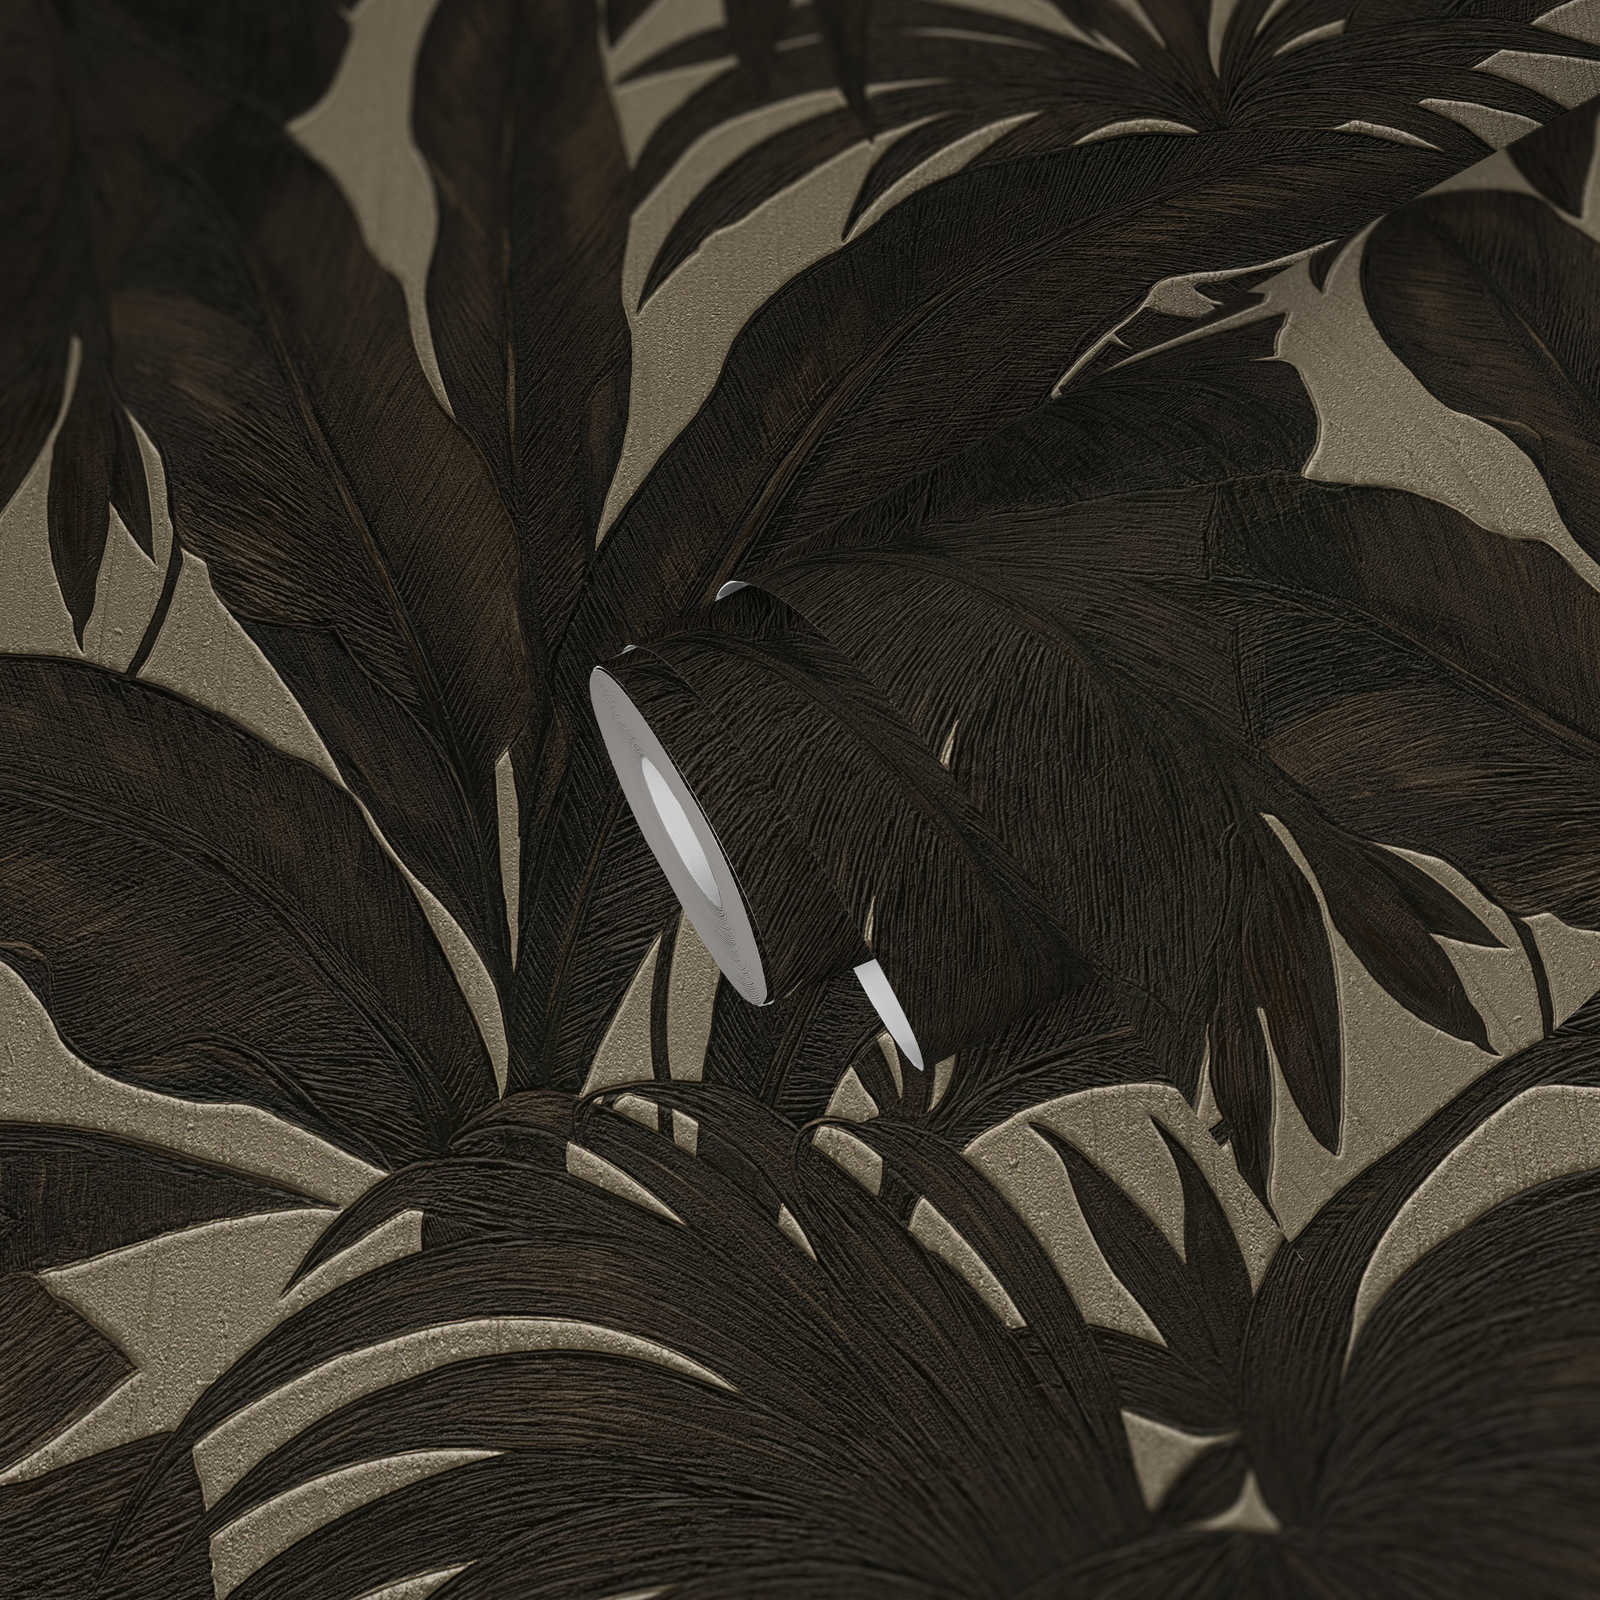             Papel pintado VERSACE palmeras y efecto metálico - marrón, metálico
        